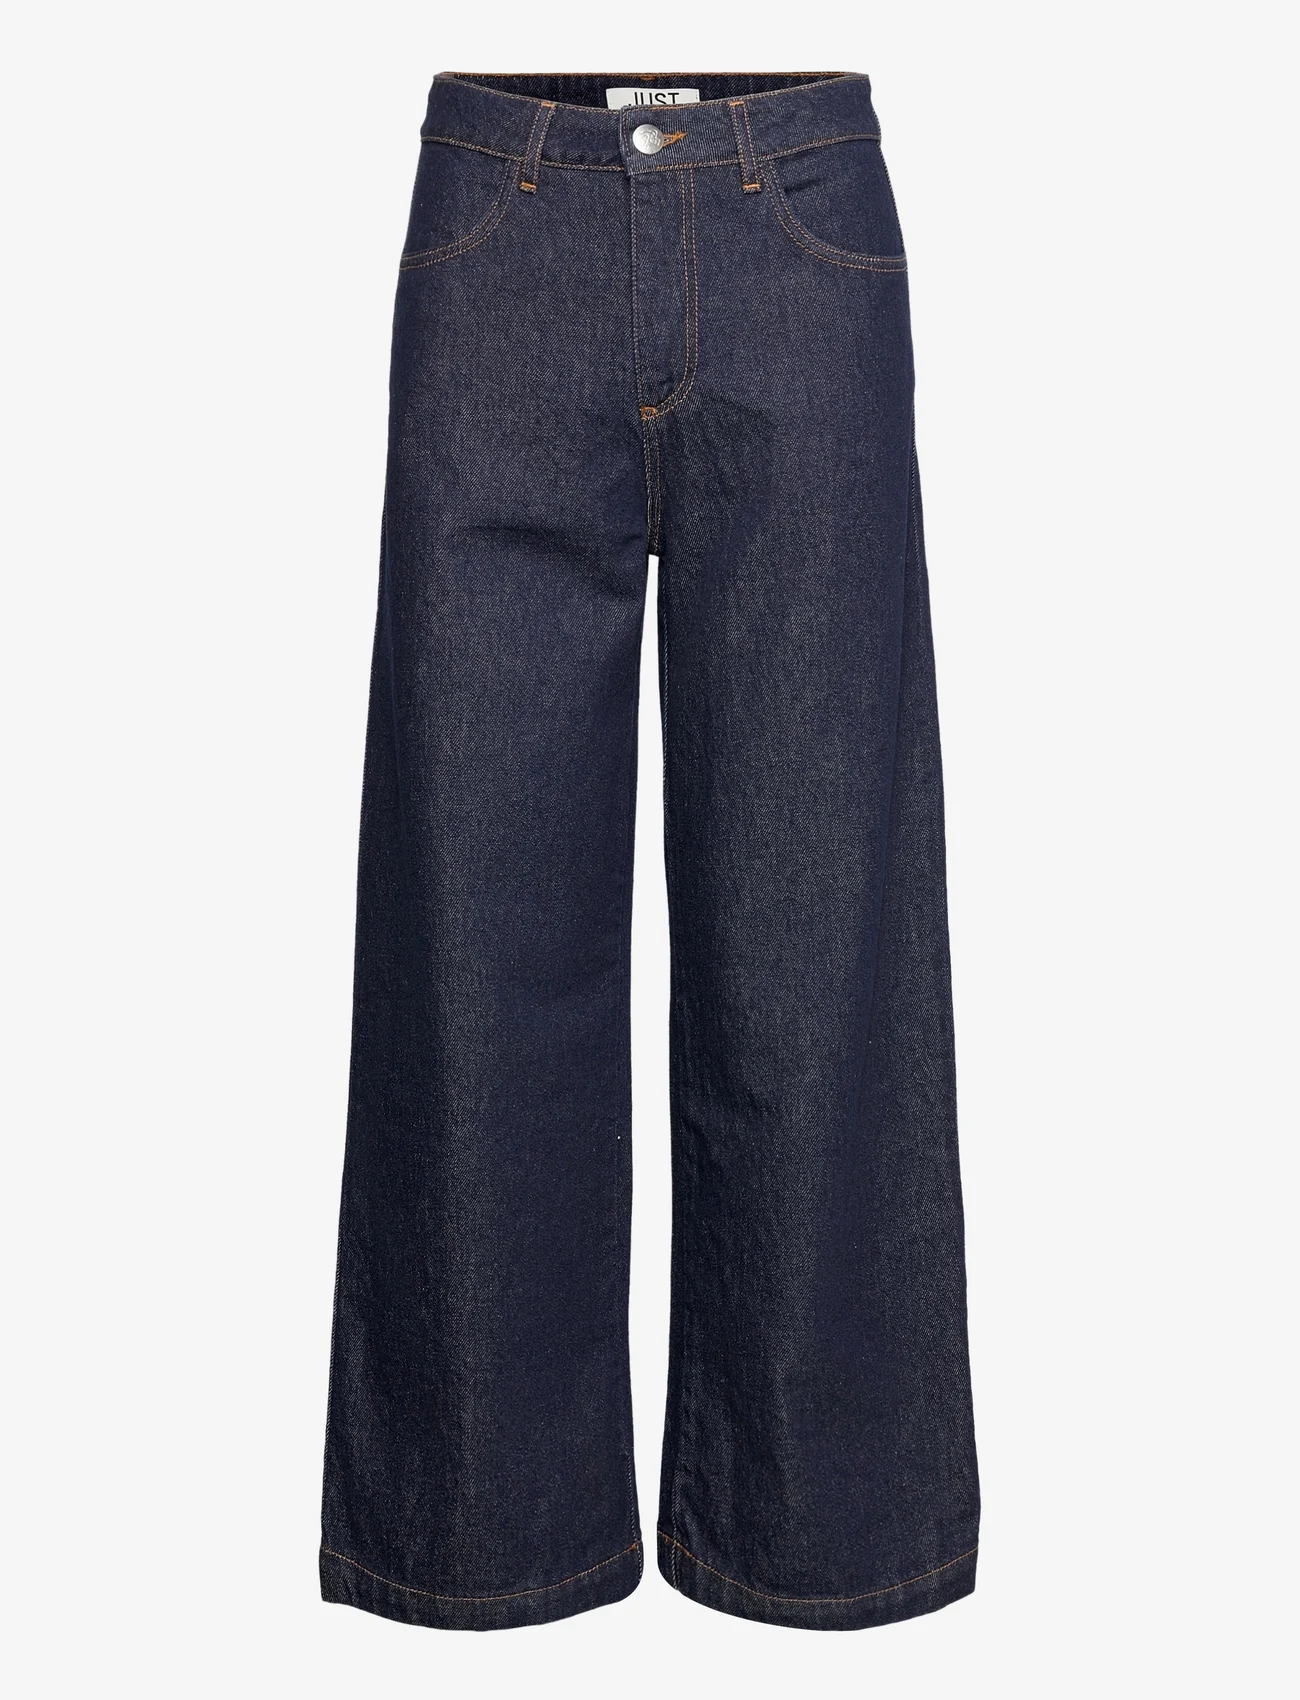 Just Female - Calm jeans 0103 - hosen mit weitem bein - blue rinse - 0